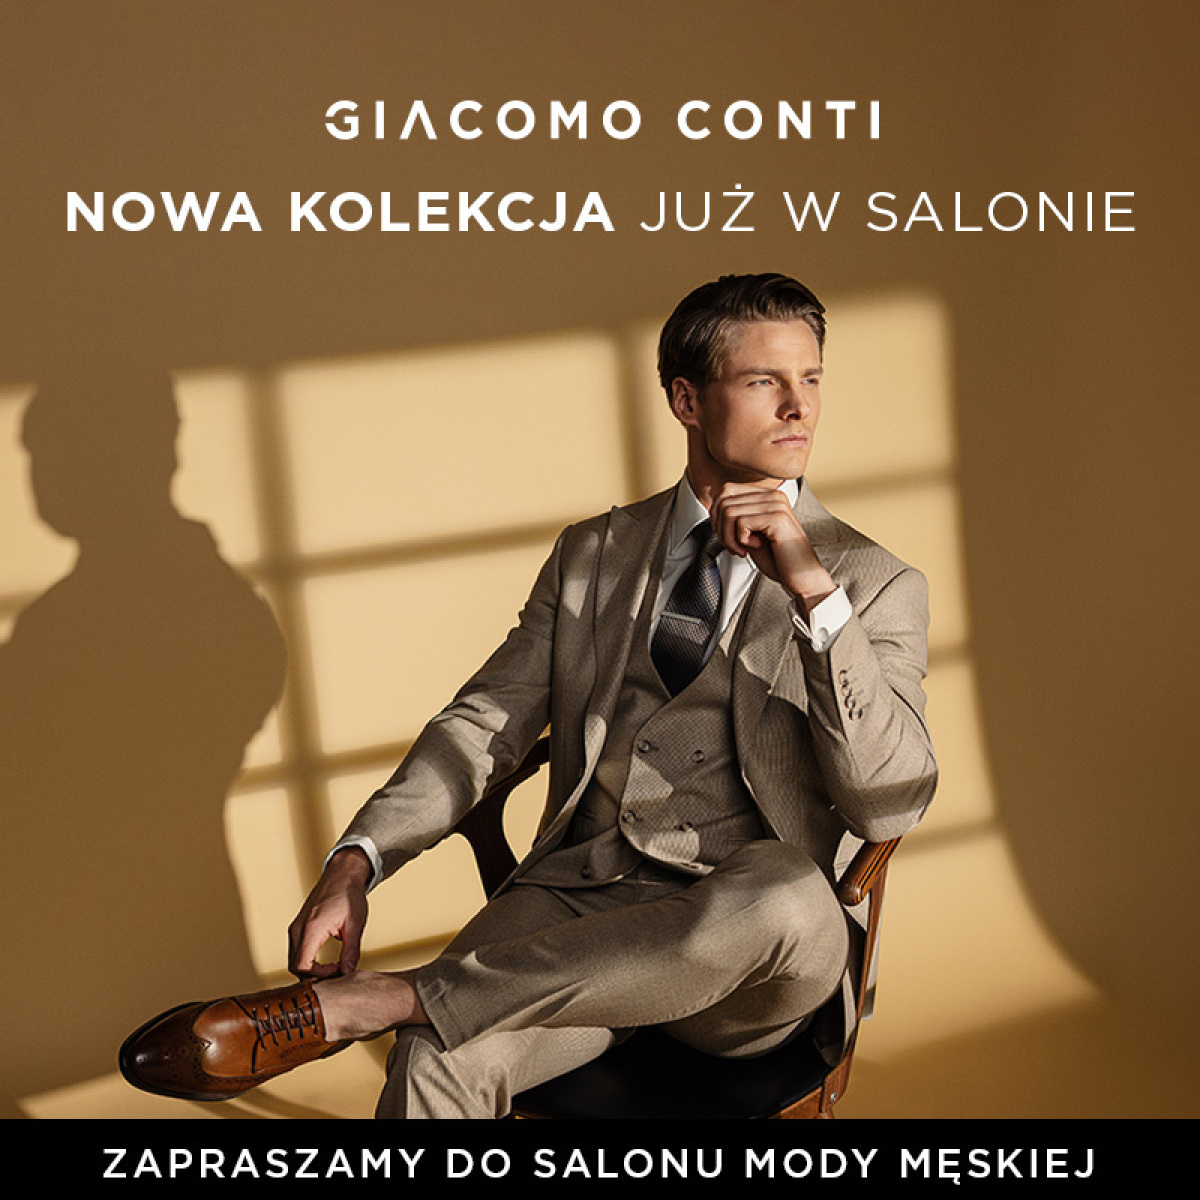 Nowa kolekcja już dostępna w salonach Giacomo Conti! 